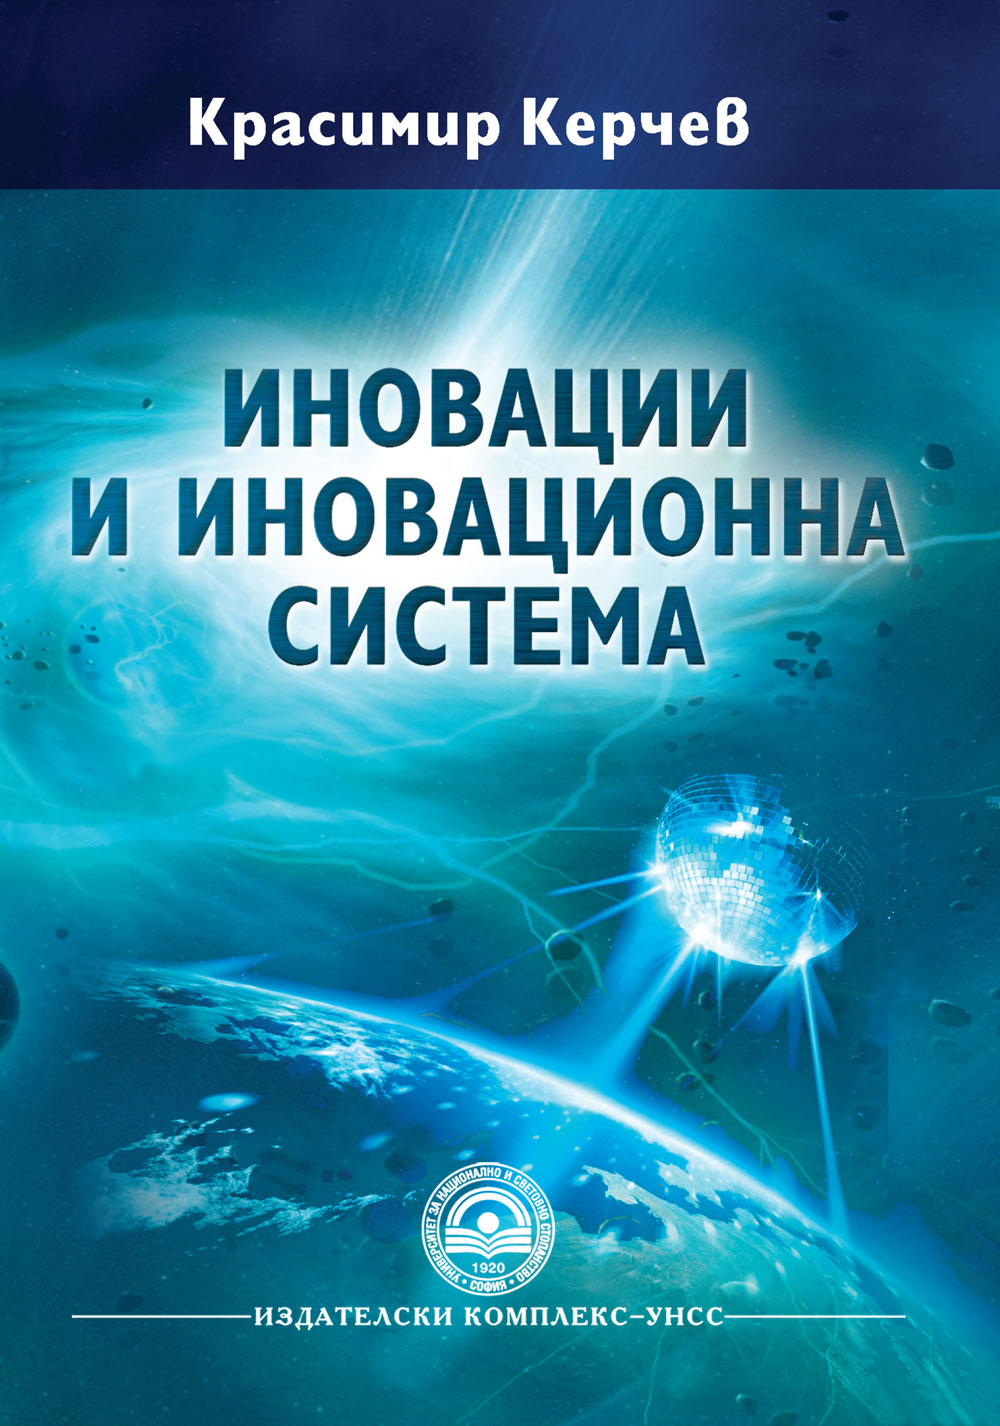 http://books.unwe.bg/wp-content/uploads/2015/12/Krasimir.kerchev.jpg